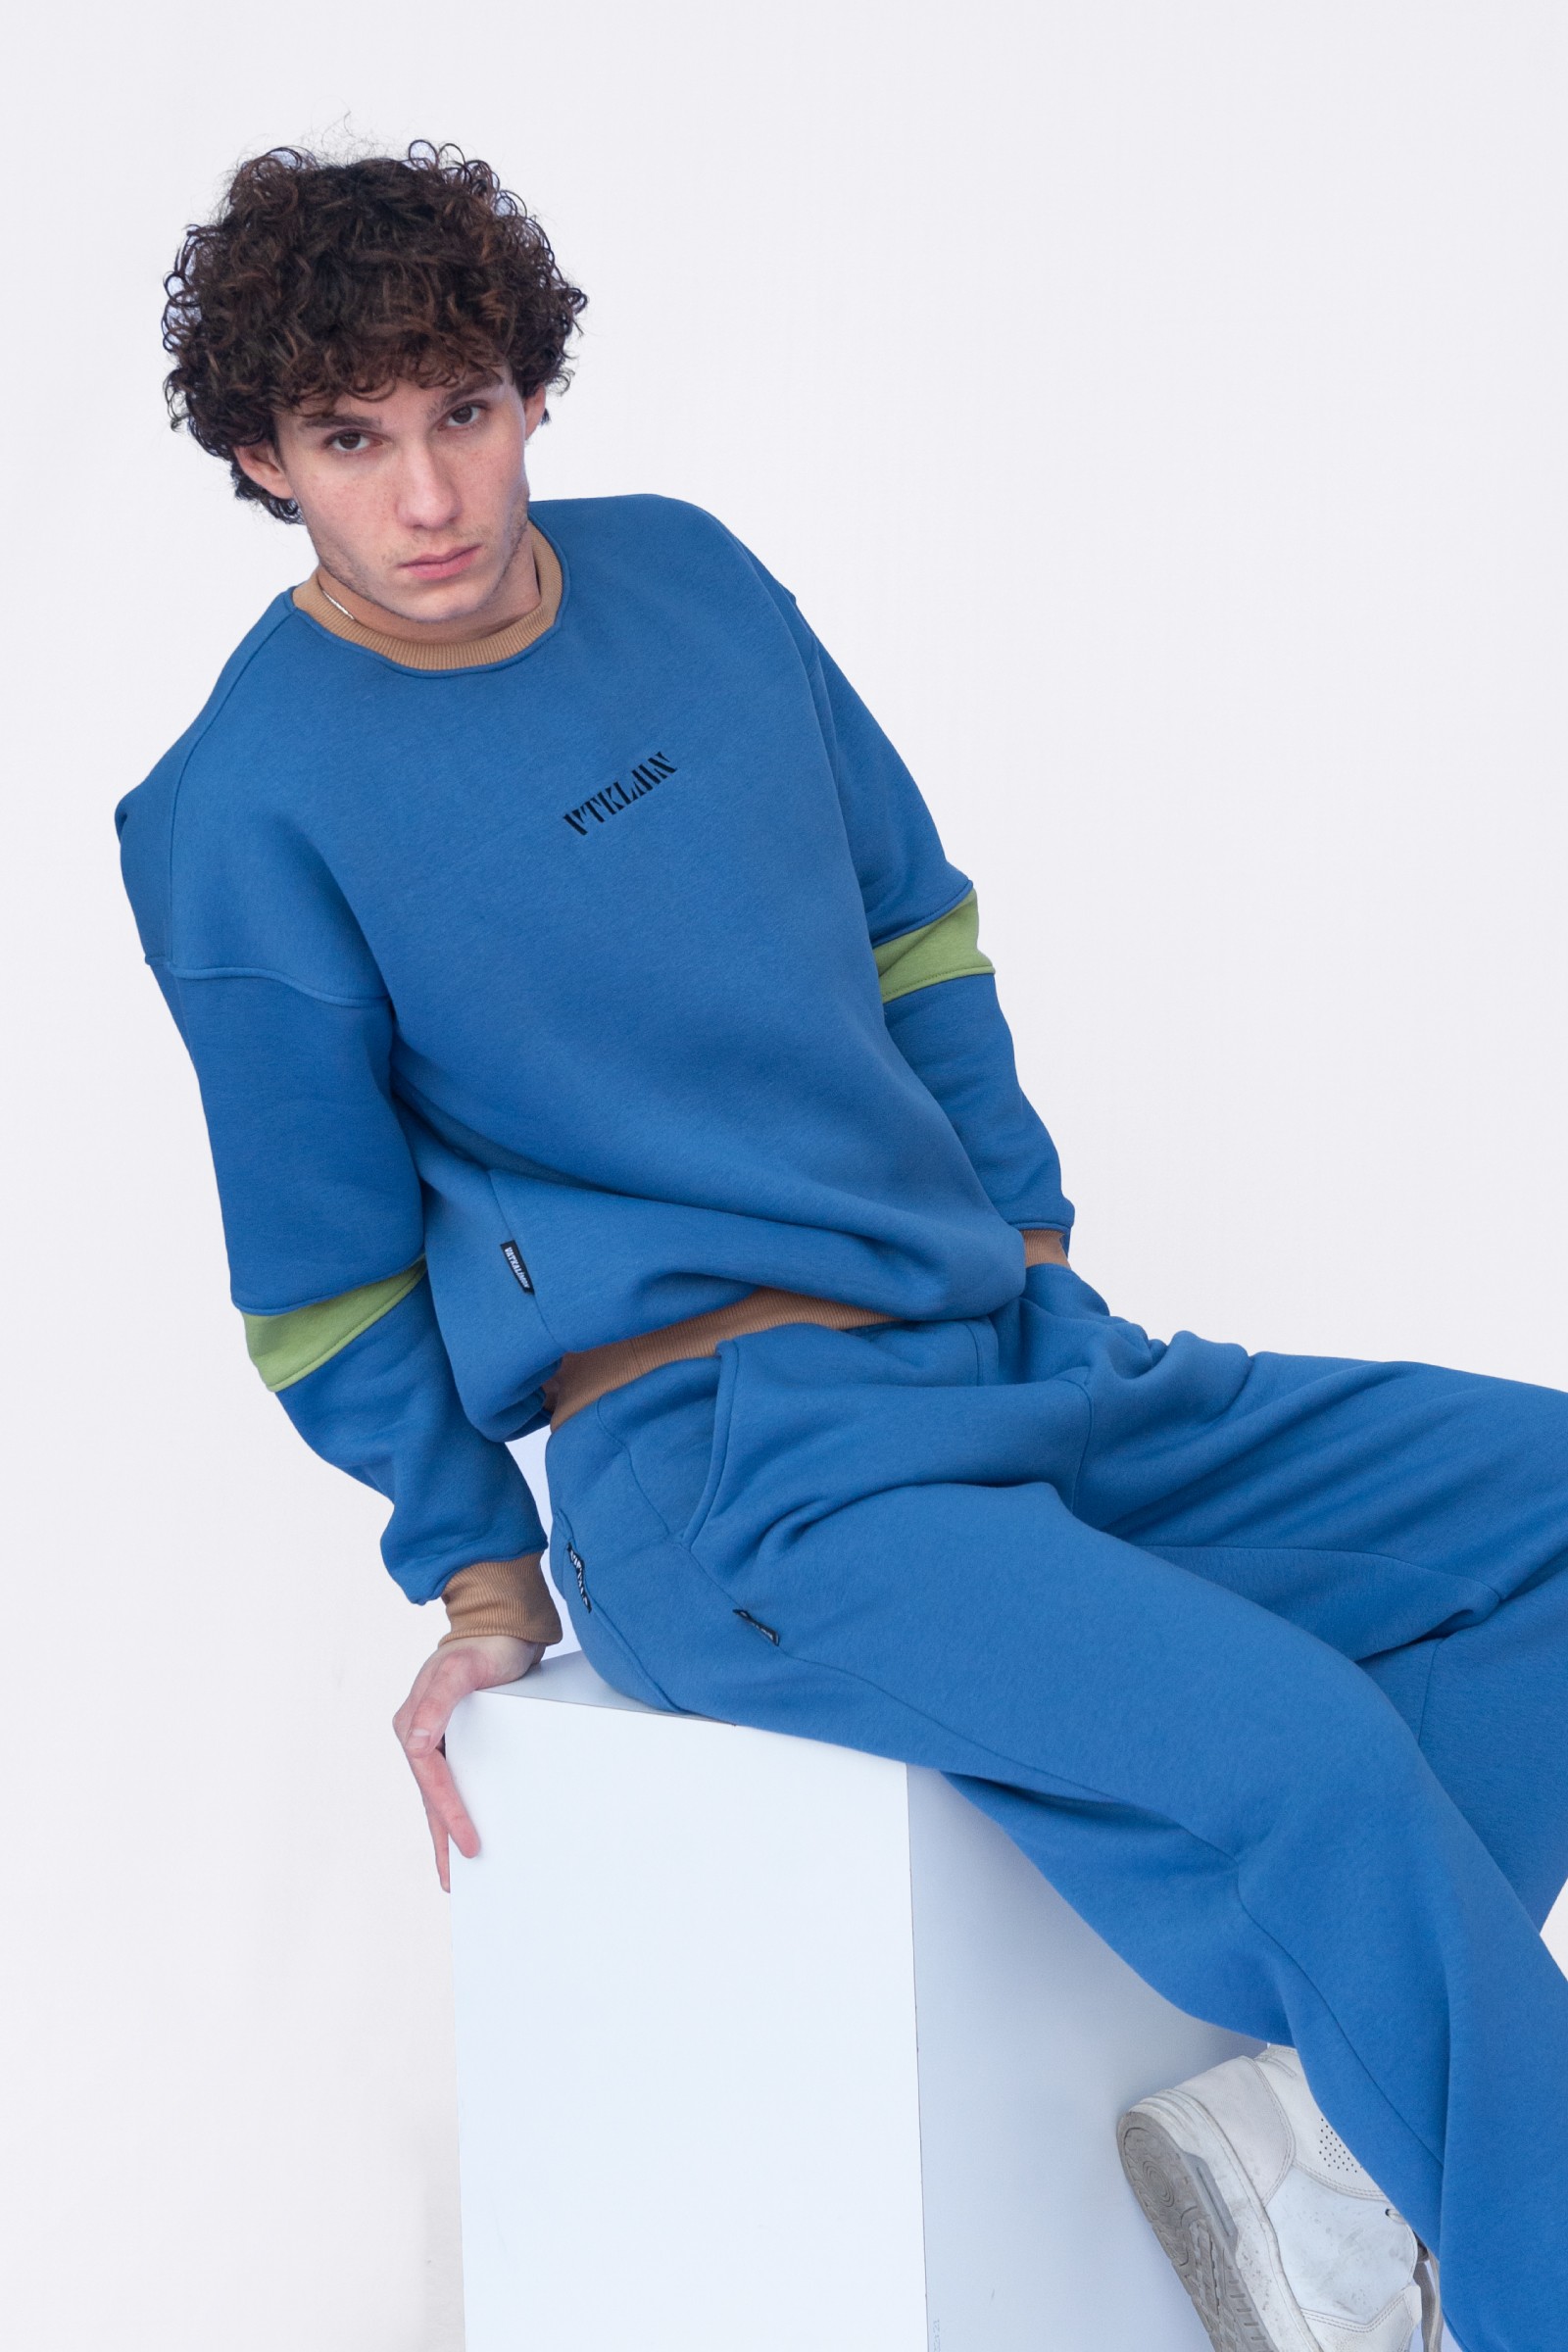 Kadın Erkek Renkli Oversize Sweatshirt - Lacivert Renkli